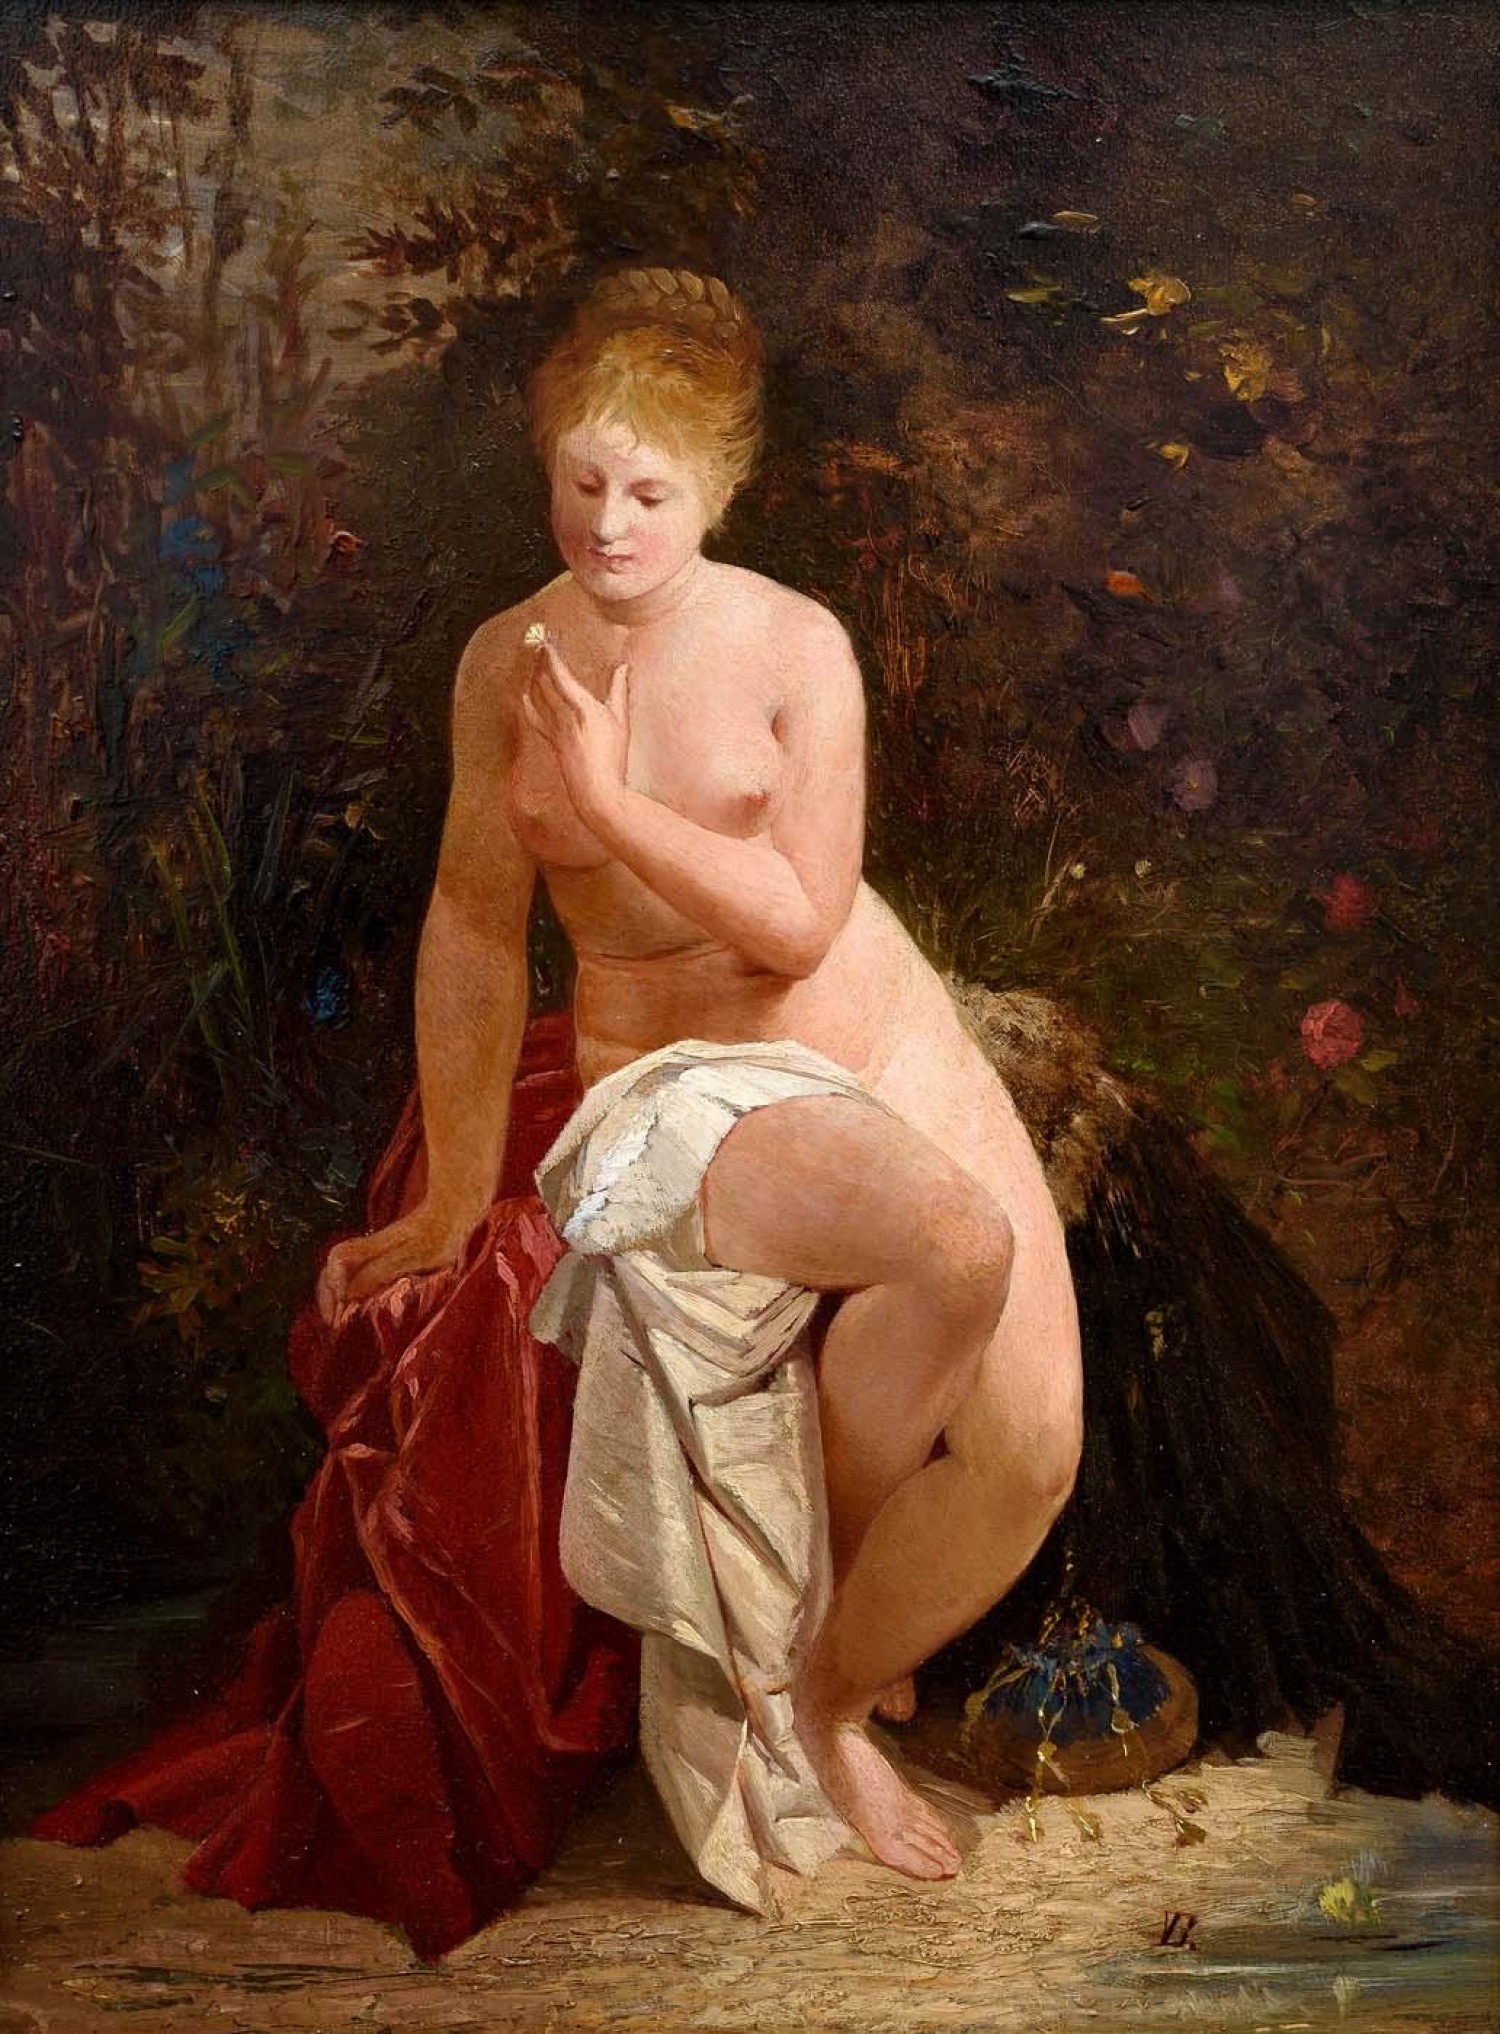 Václav Brožík: Sedící dívčí akt, 1873, olej na dřevě, 40 x 29 cm, vyvolávací cena: 250 000 Kč (+ 20% provize), Galerie Kodl 28. 11. 2021